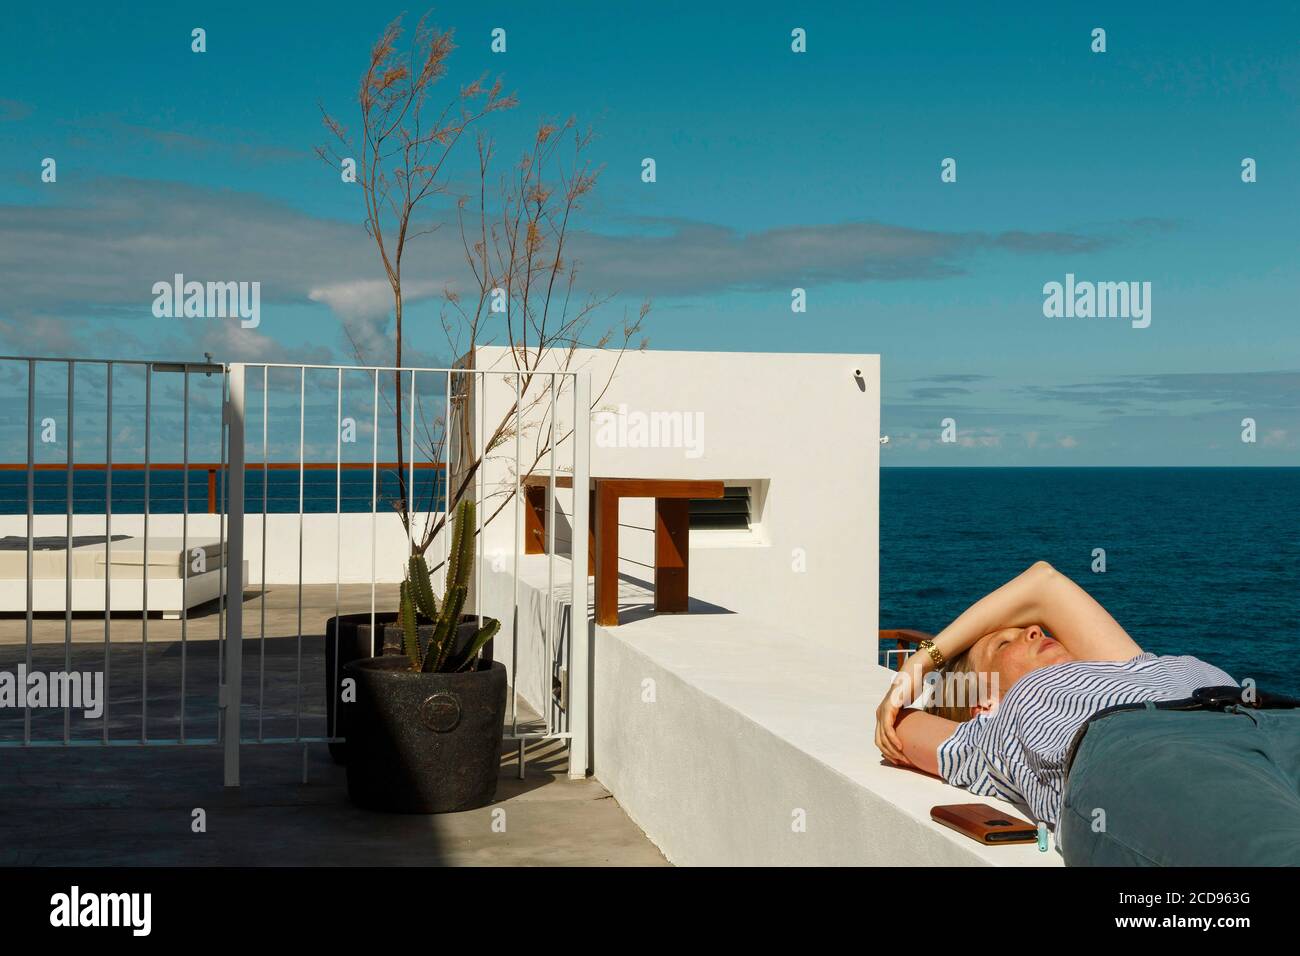 España, Islas Canarias, la Palma, joven descansando en el borde de una terraza junto al mar Foto de stock